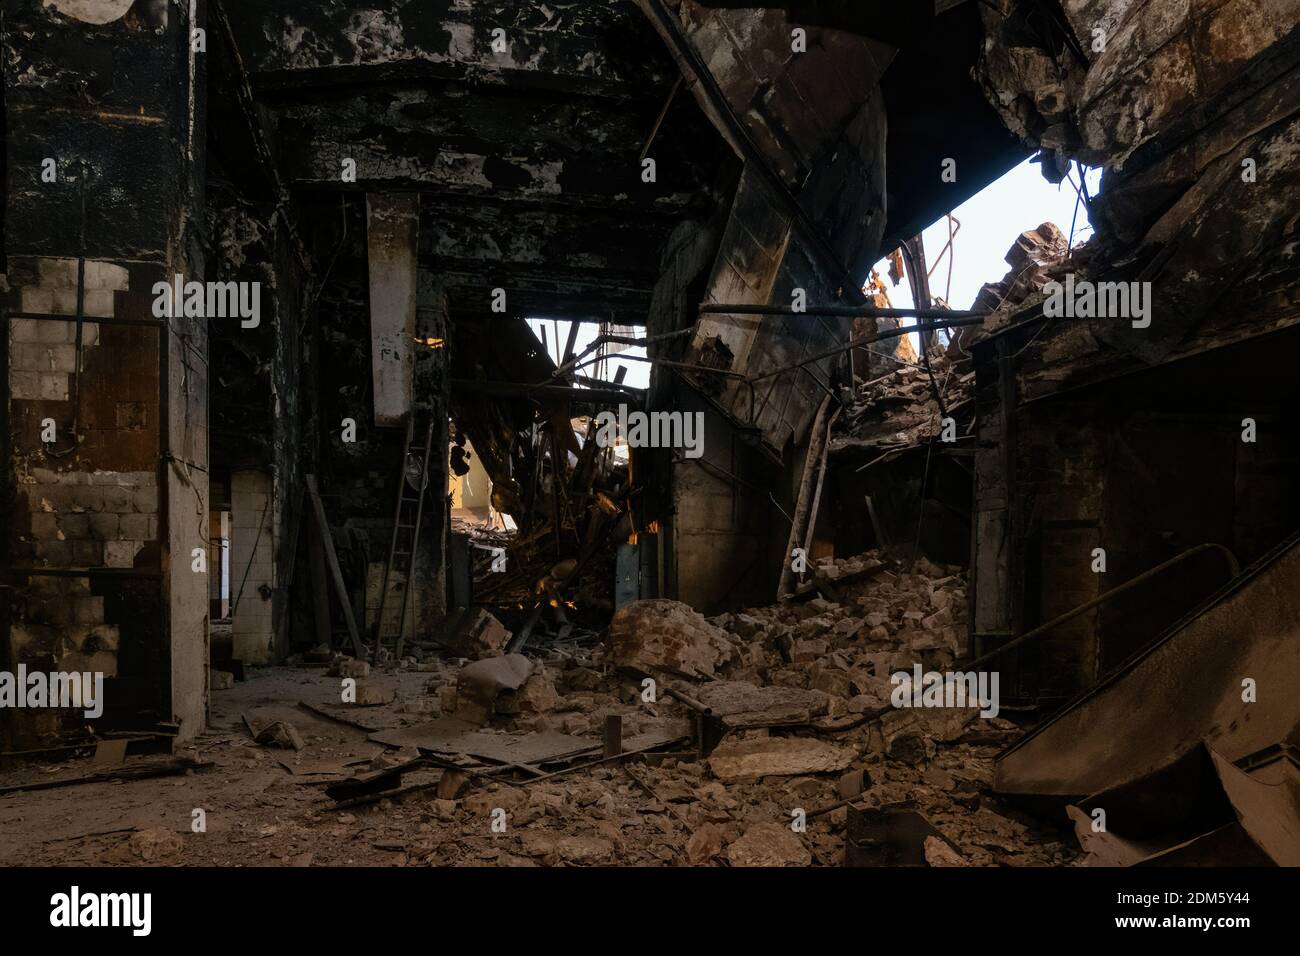 Verbrannte und zerstörte das Innere des Industriegebäudes nach dem Brand. Folgen von Krieg, Feuer oder anderen Katastrophen. Stockfoto